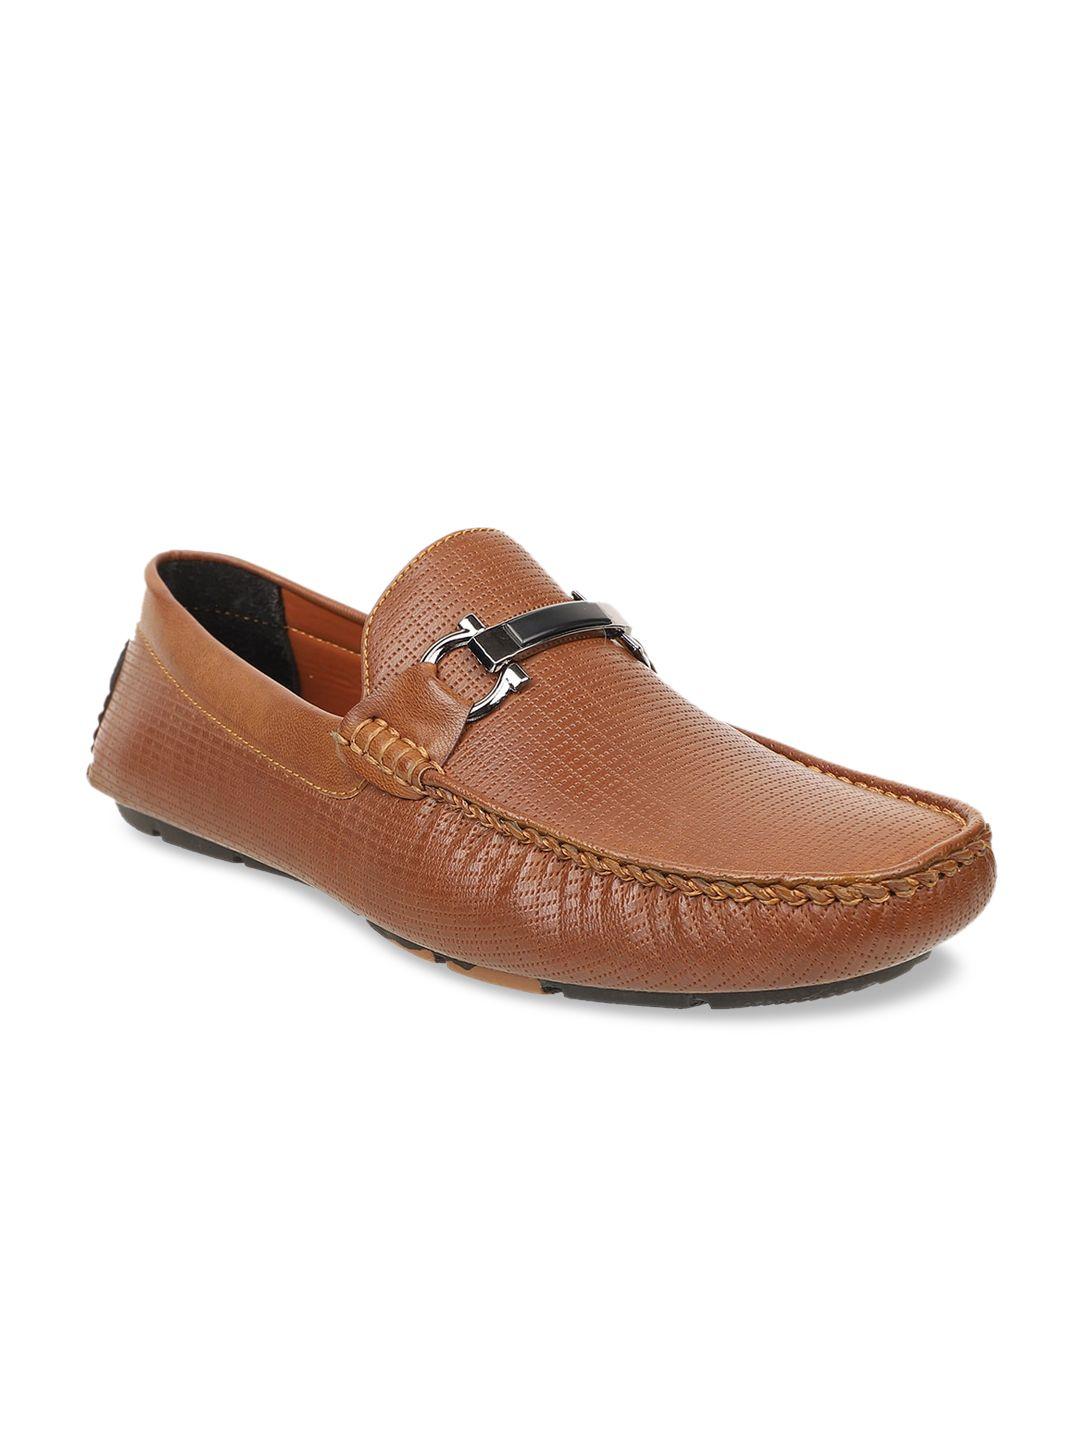 carlton london men tan driving shoes